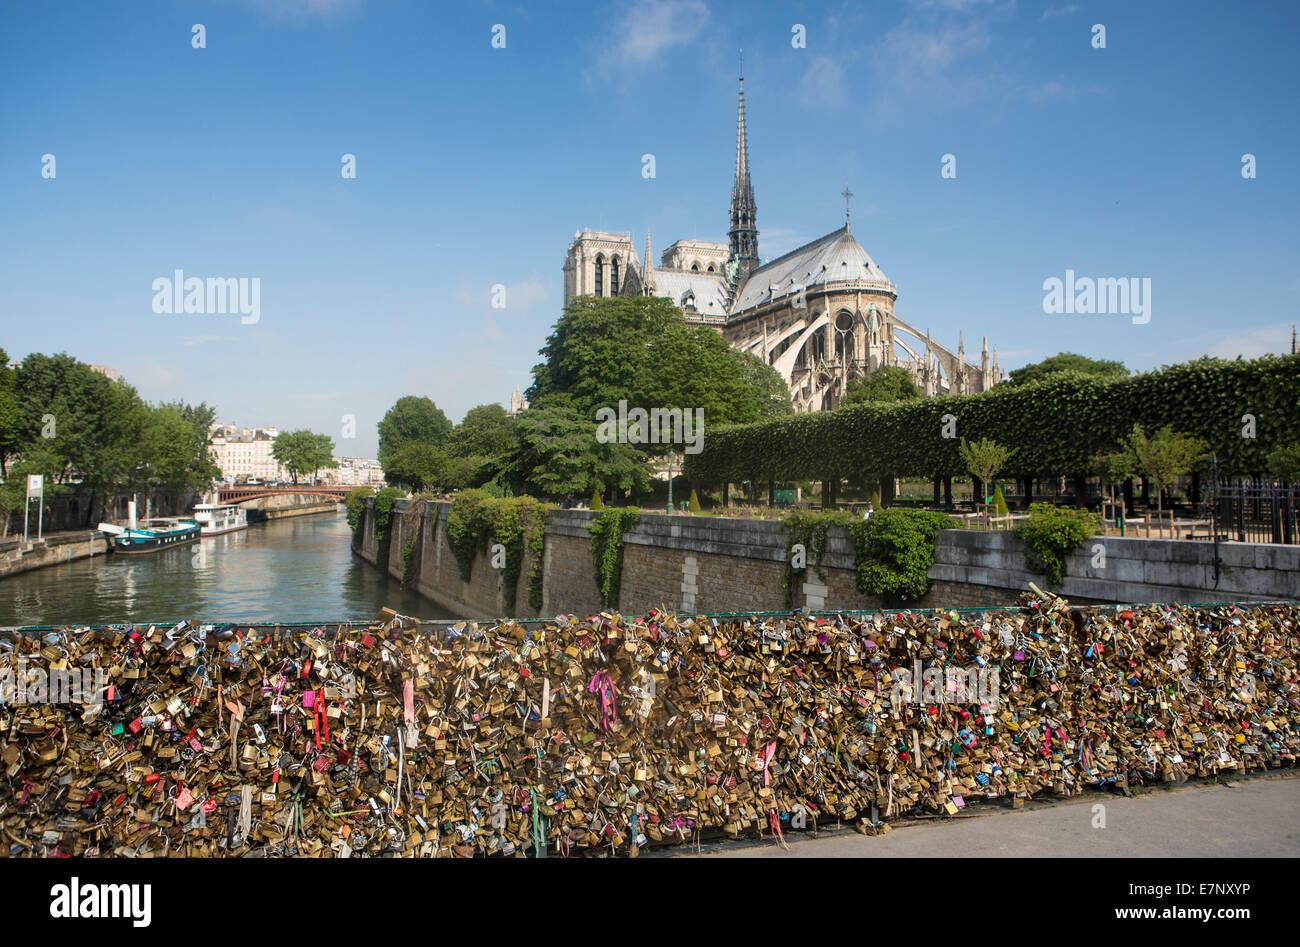 Puente de la ciudad, la Catedral, Francia, Hardware, Notre Dame, París, colorido, taquillas, el amor, el río Sena, turismo, viajes Foto de stock